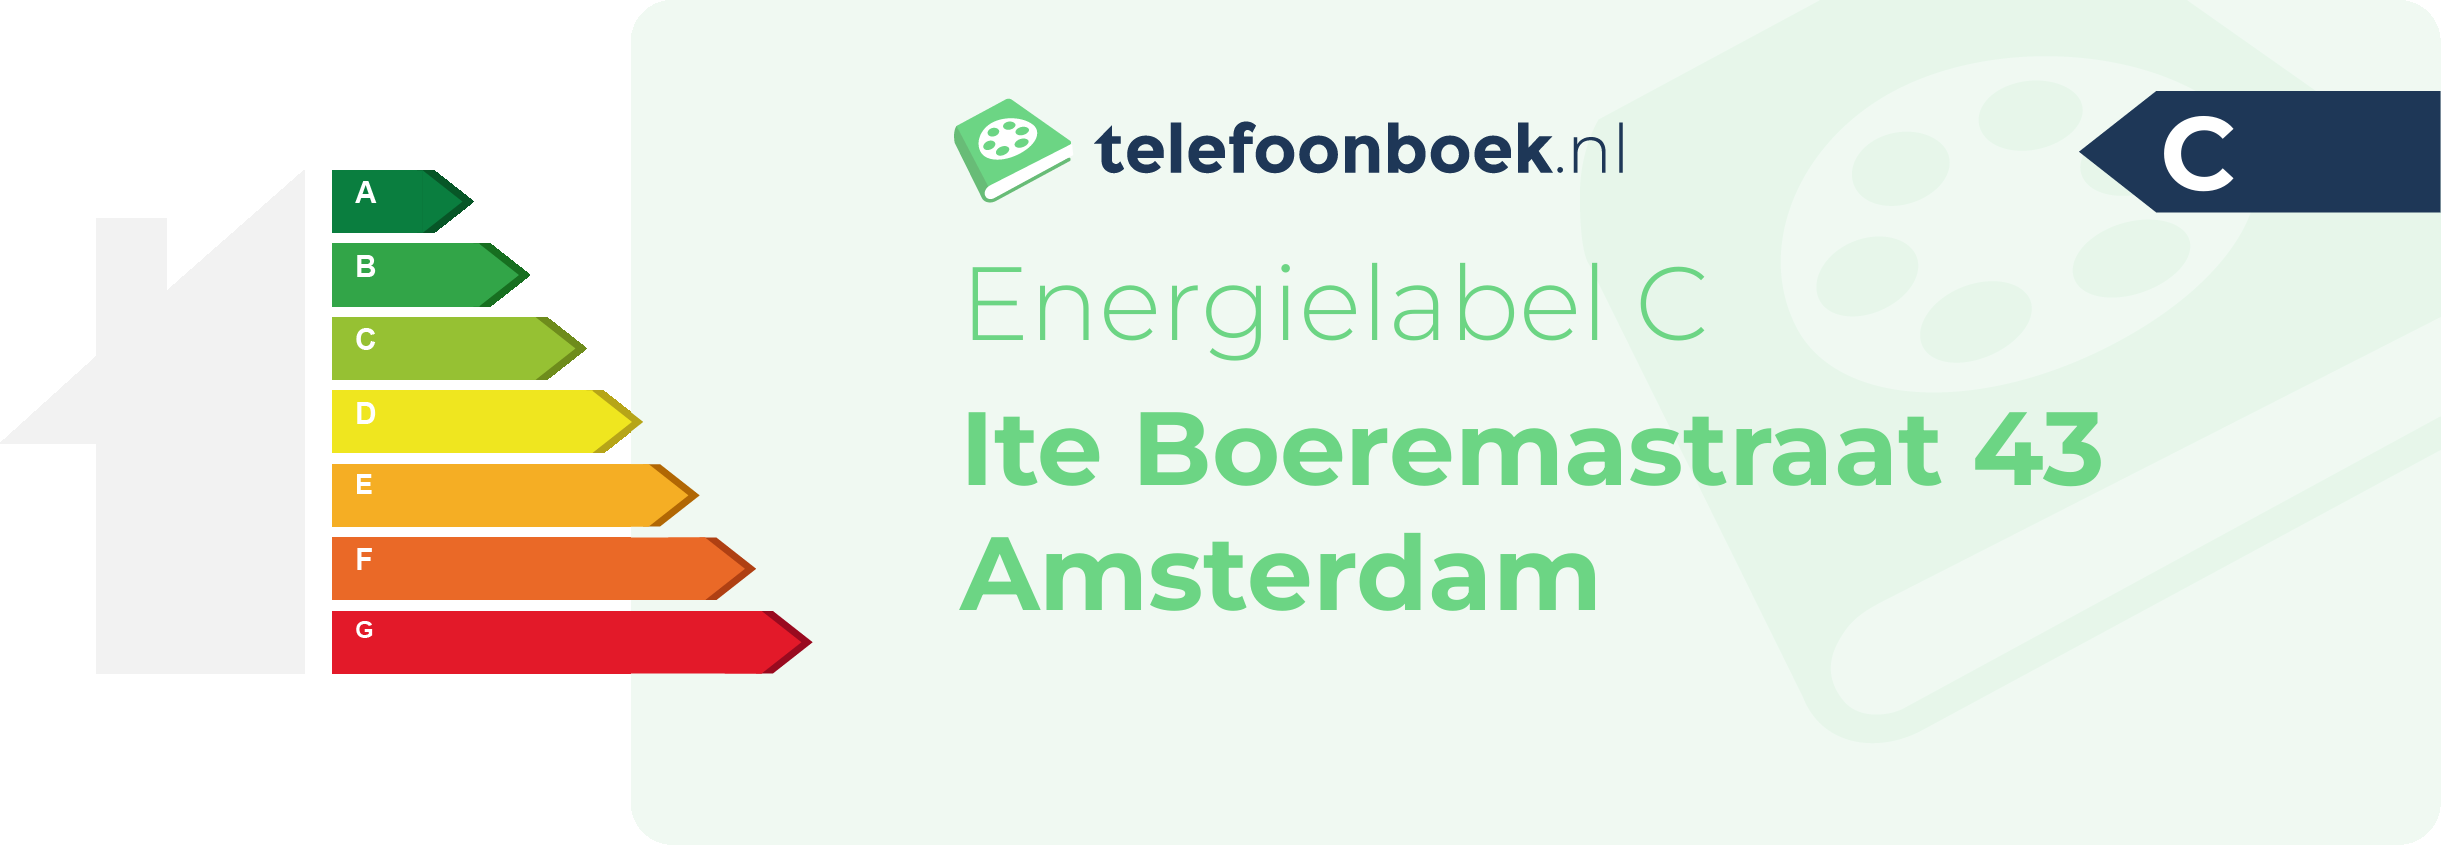 Energielabel Ite Boeremastraat 43 Amsterdam